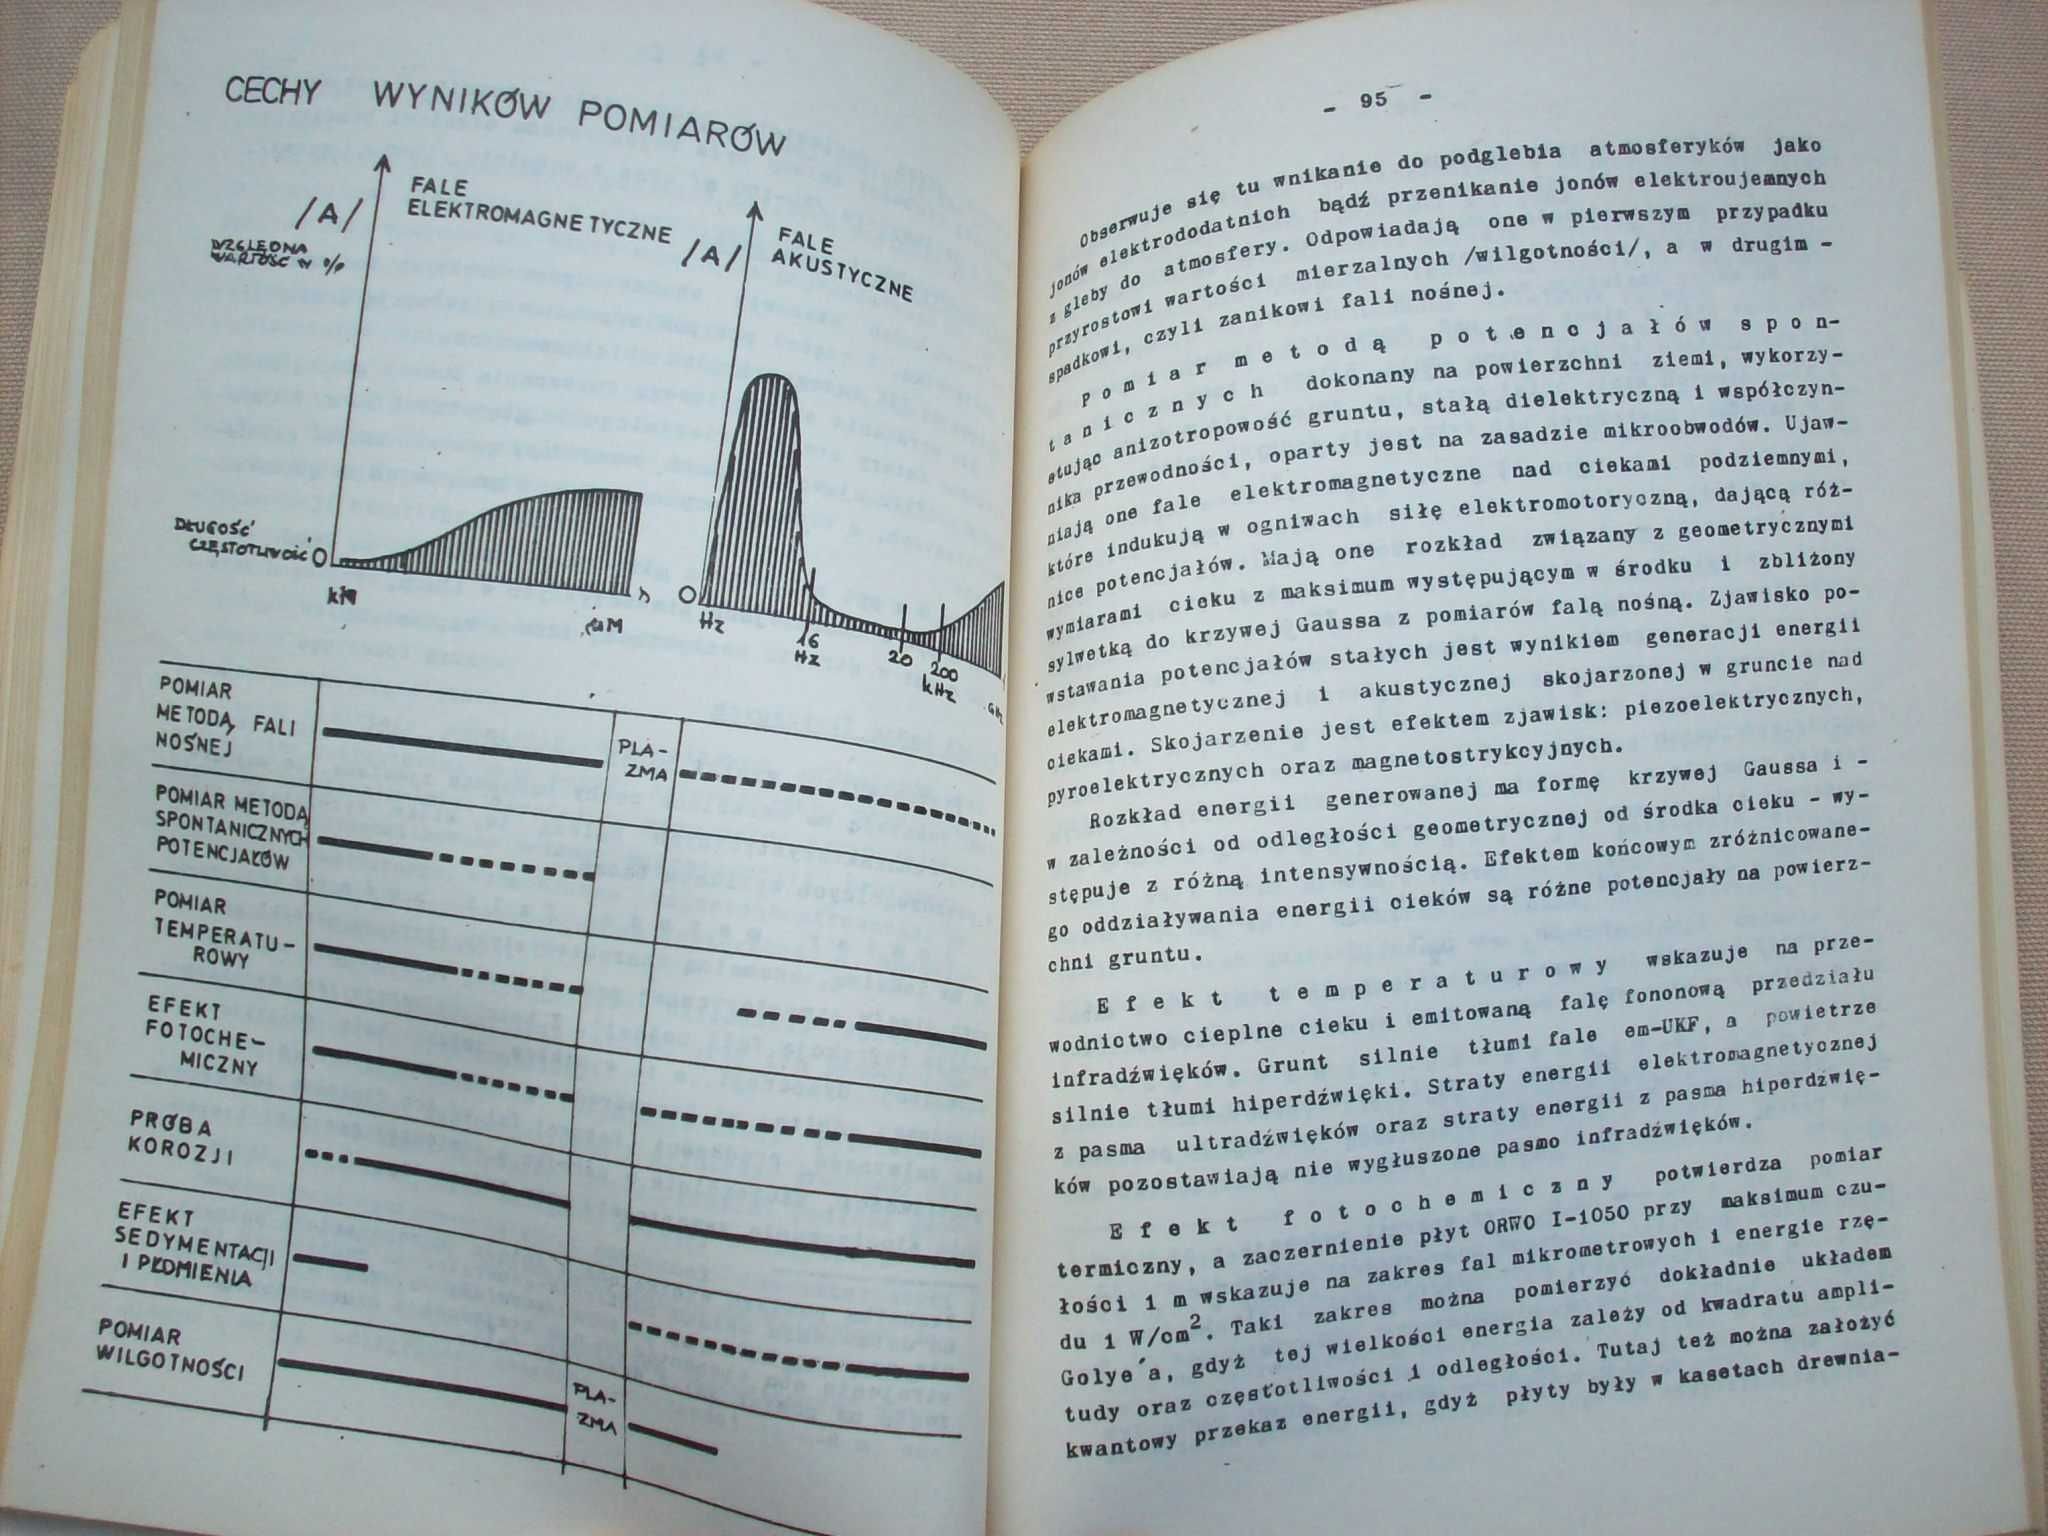 Strefy nad ciekami wód wgłębnych, L.J.Radwanowski, 1988.